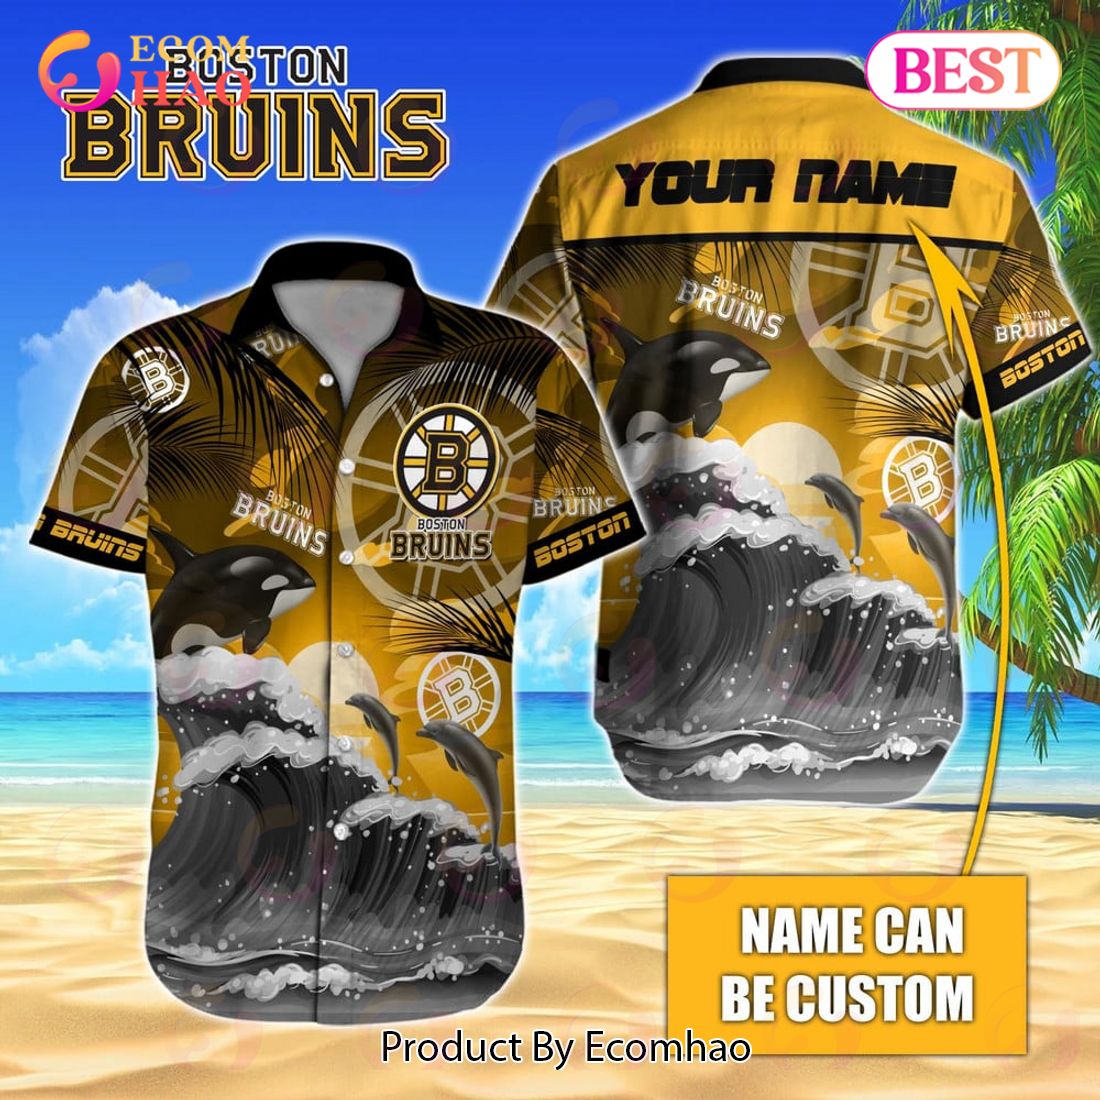 NHL Boston Bruins Special Camo Hockey Jersey - Ecomhao Store